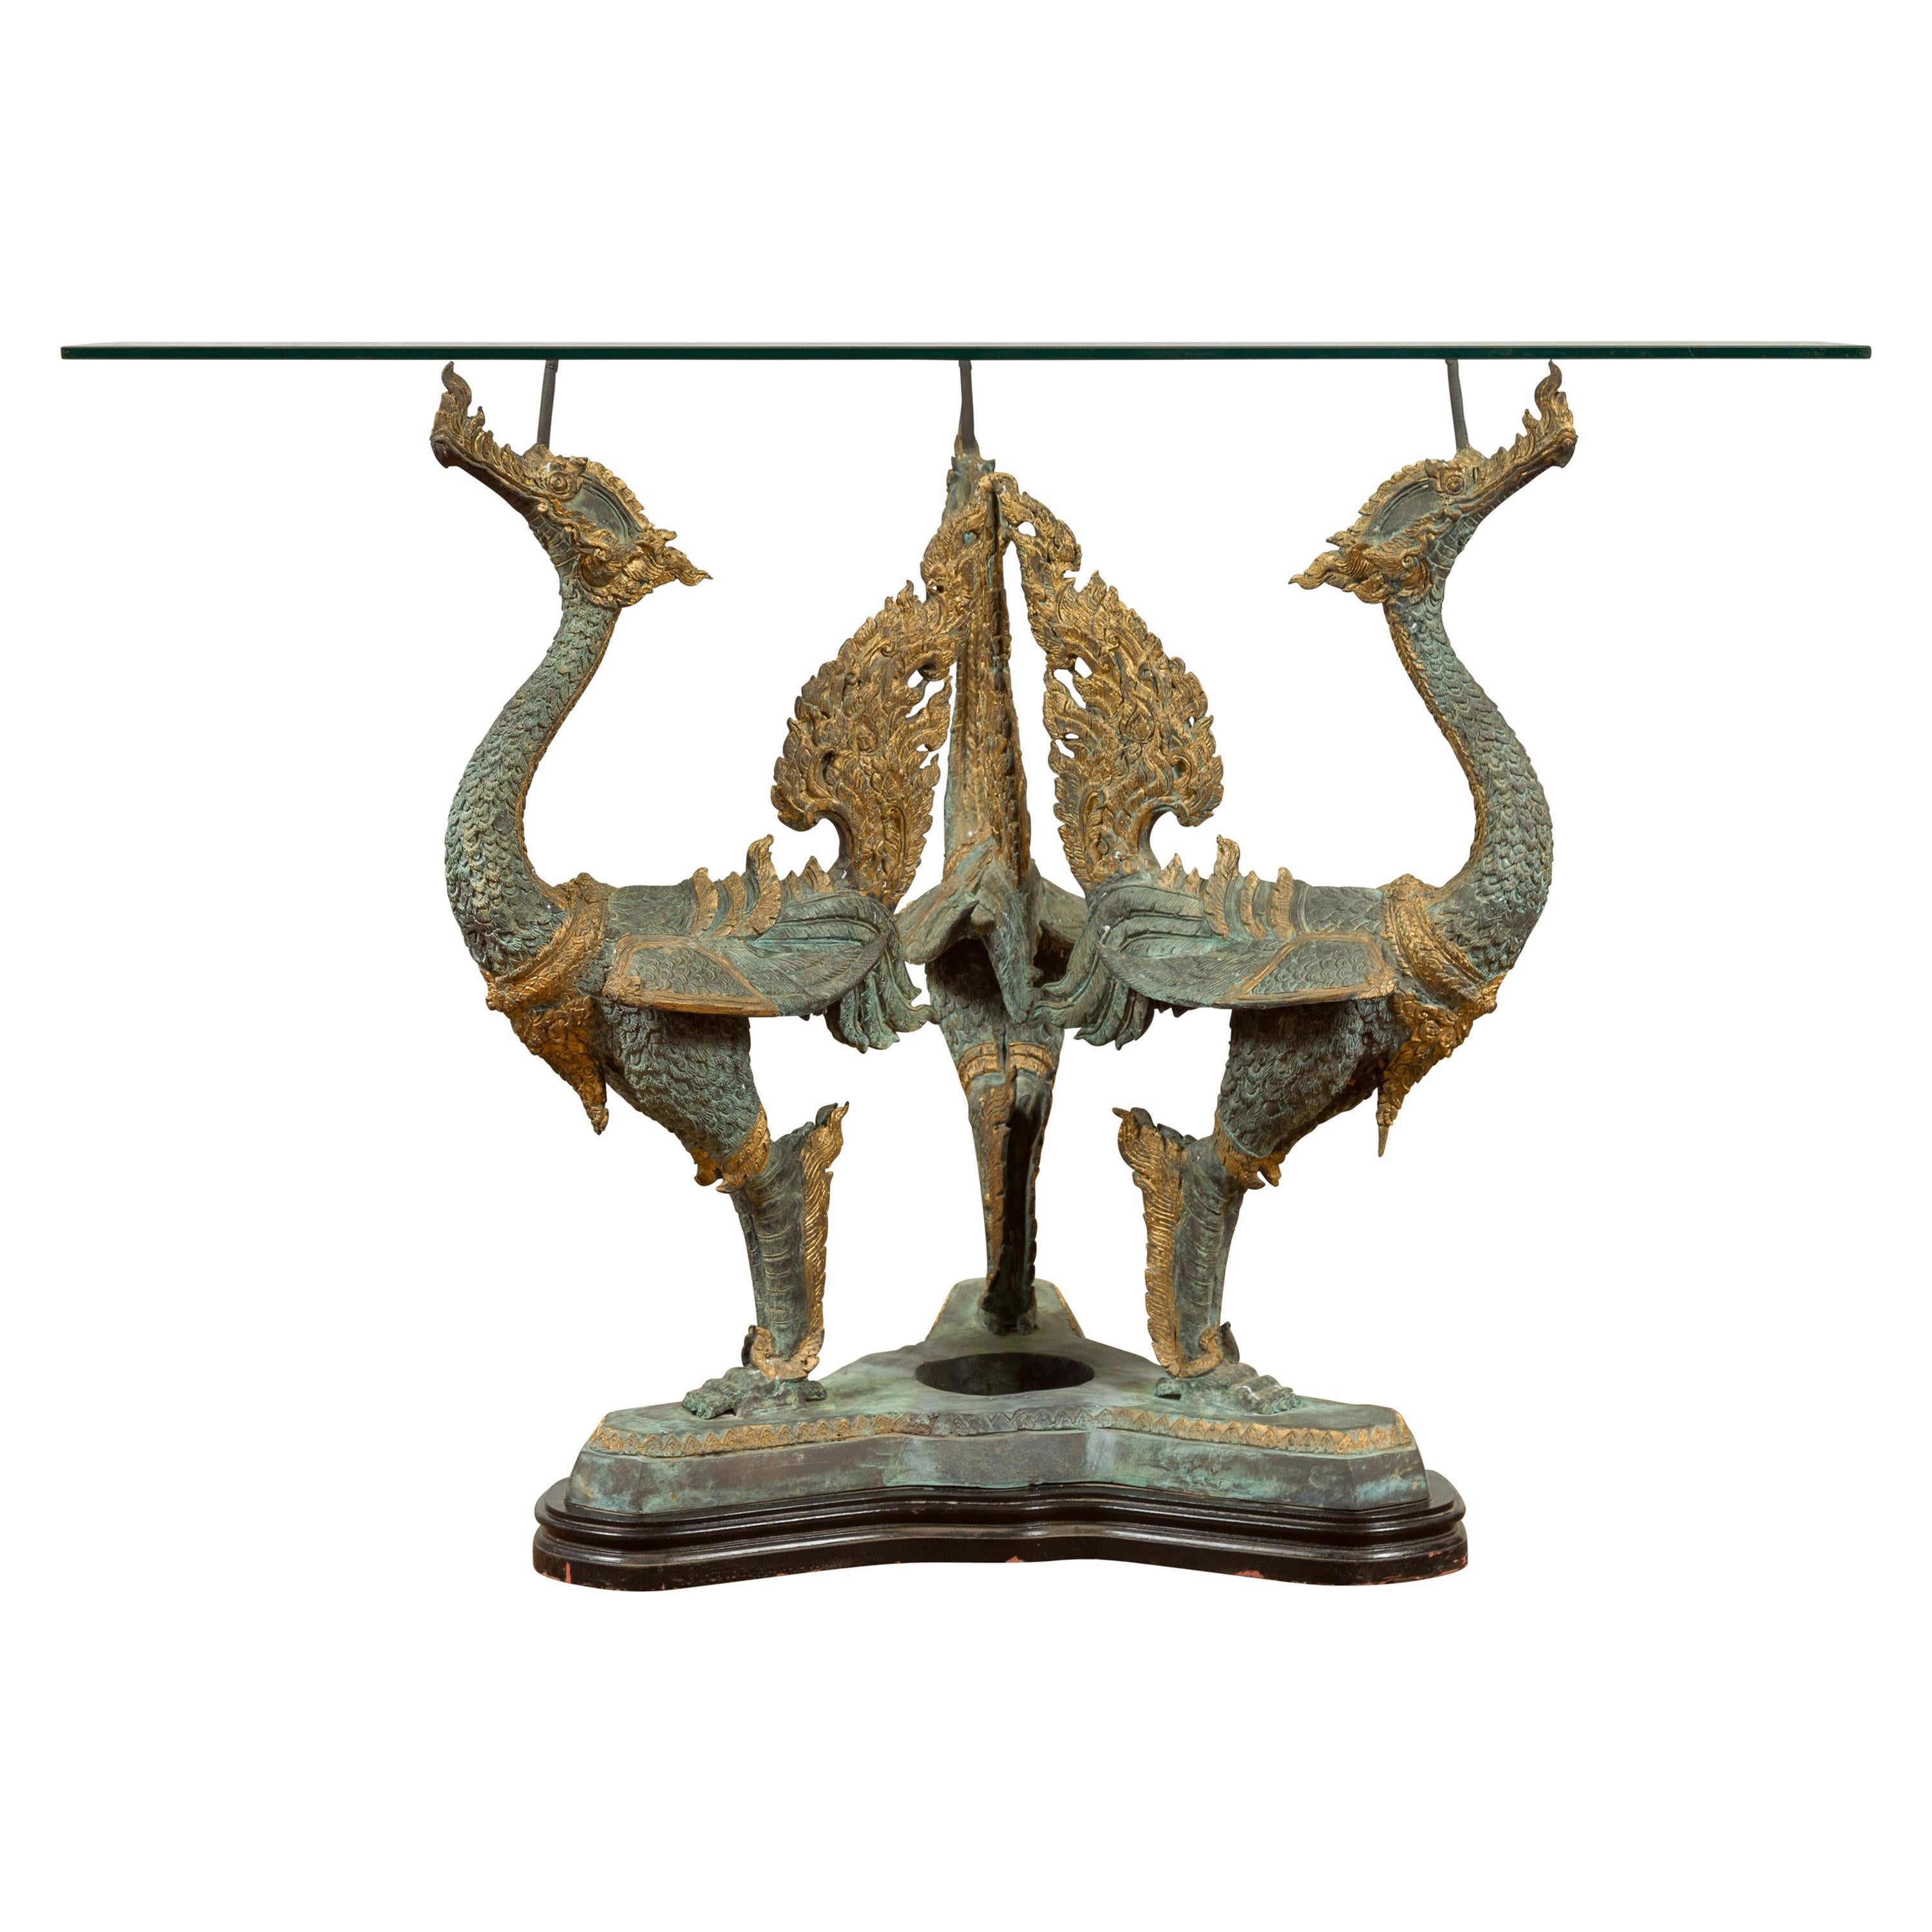 Base de table contemporaine à trois dragons en bronze avec patine vert-de-gris et accents dorés